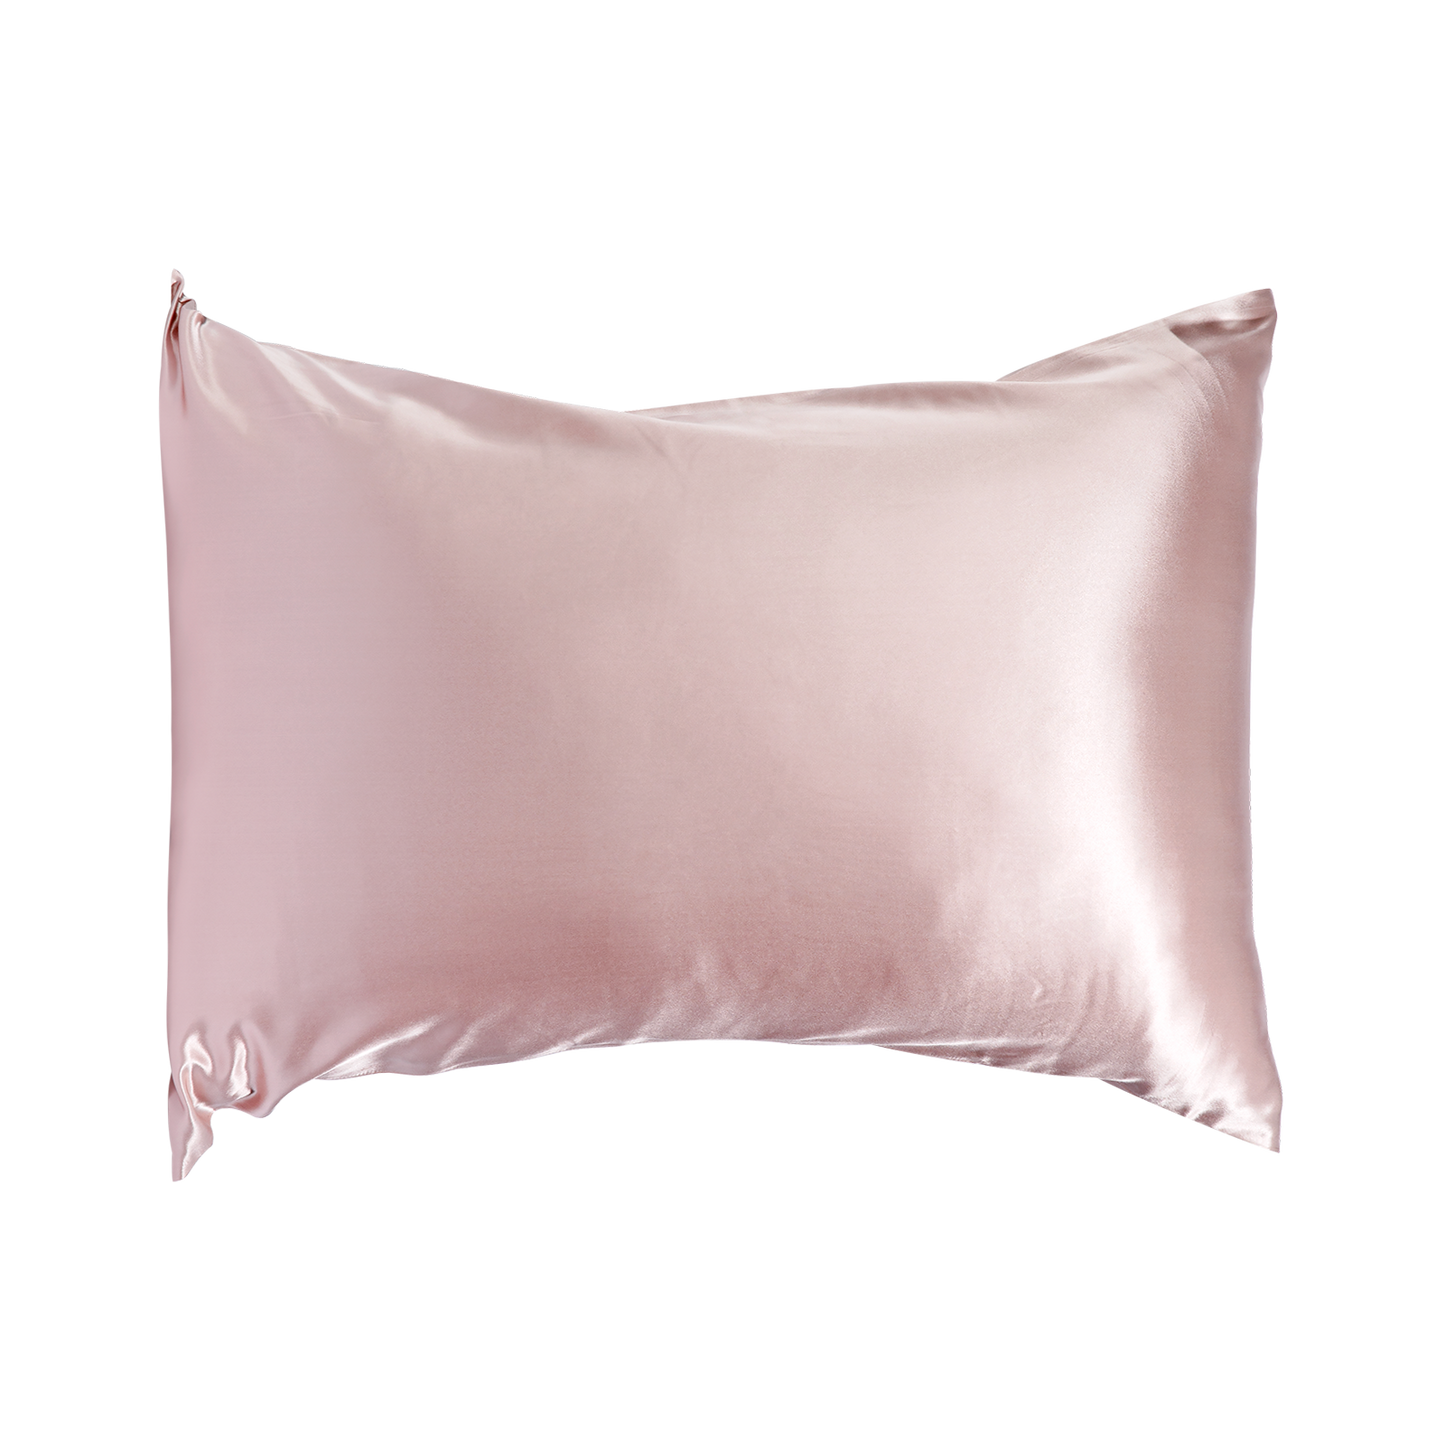 100% Silk Pillowcase W Envelope Closure, 20.08 X 29.92 INCH